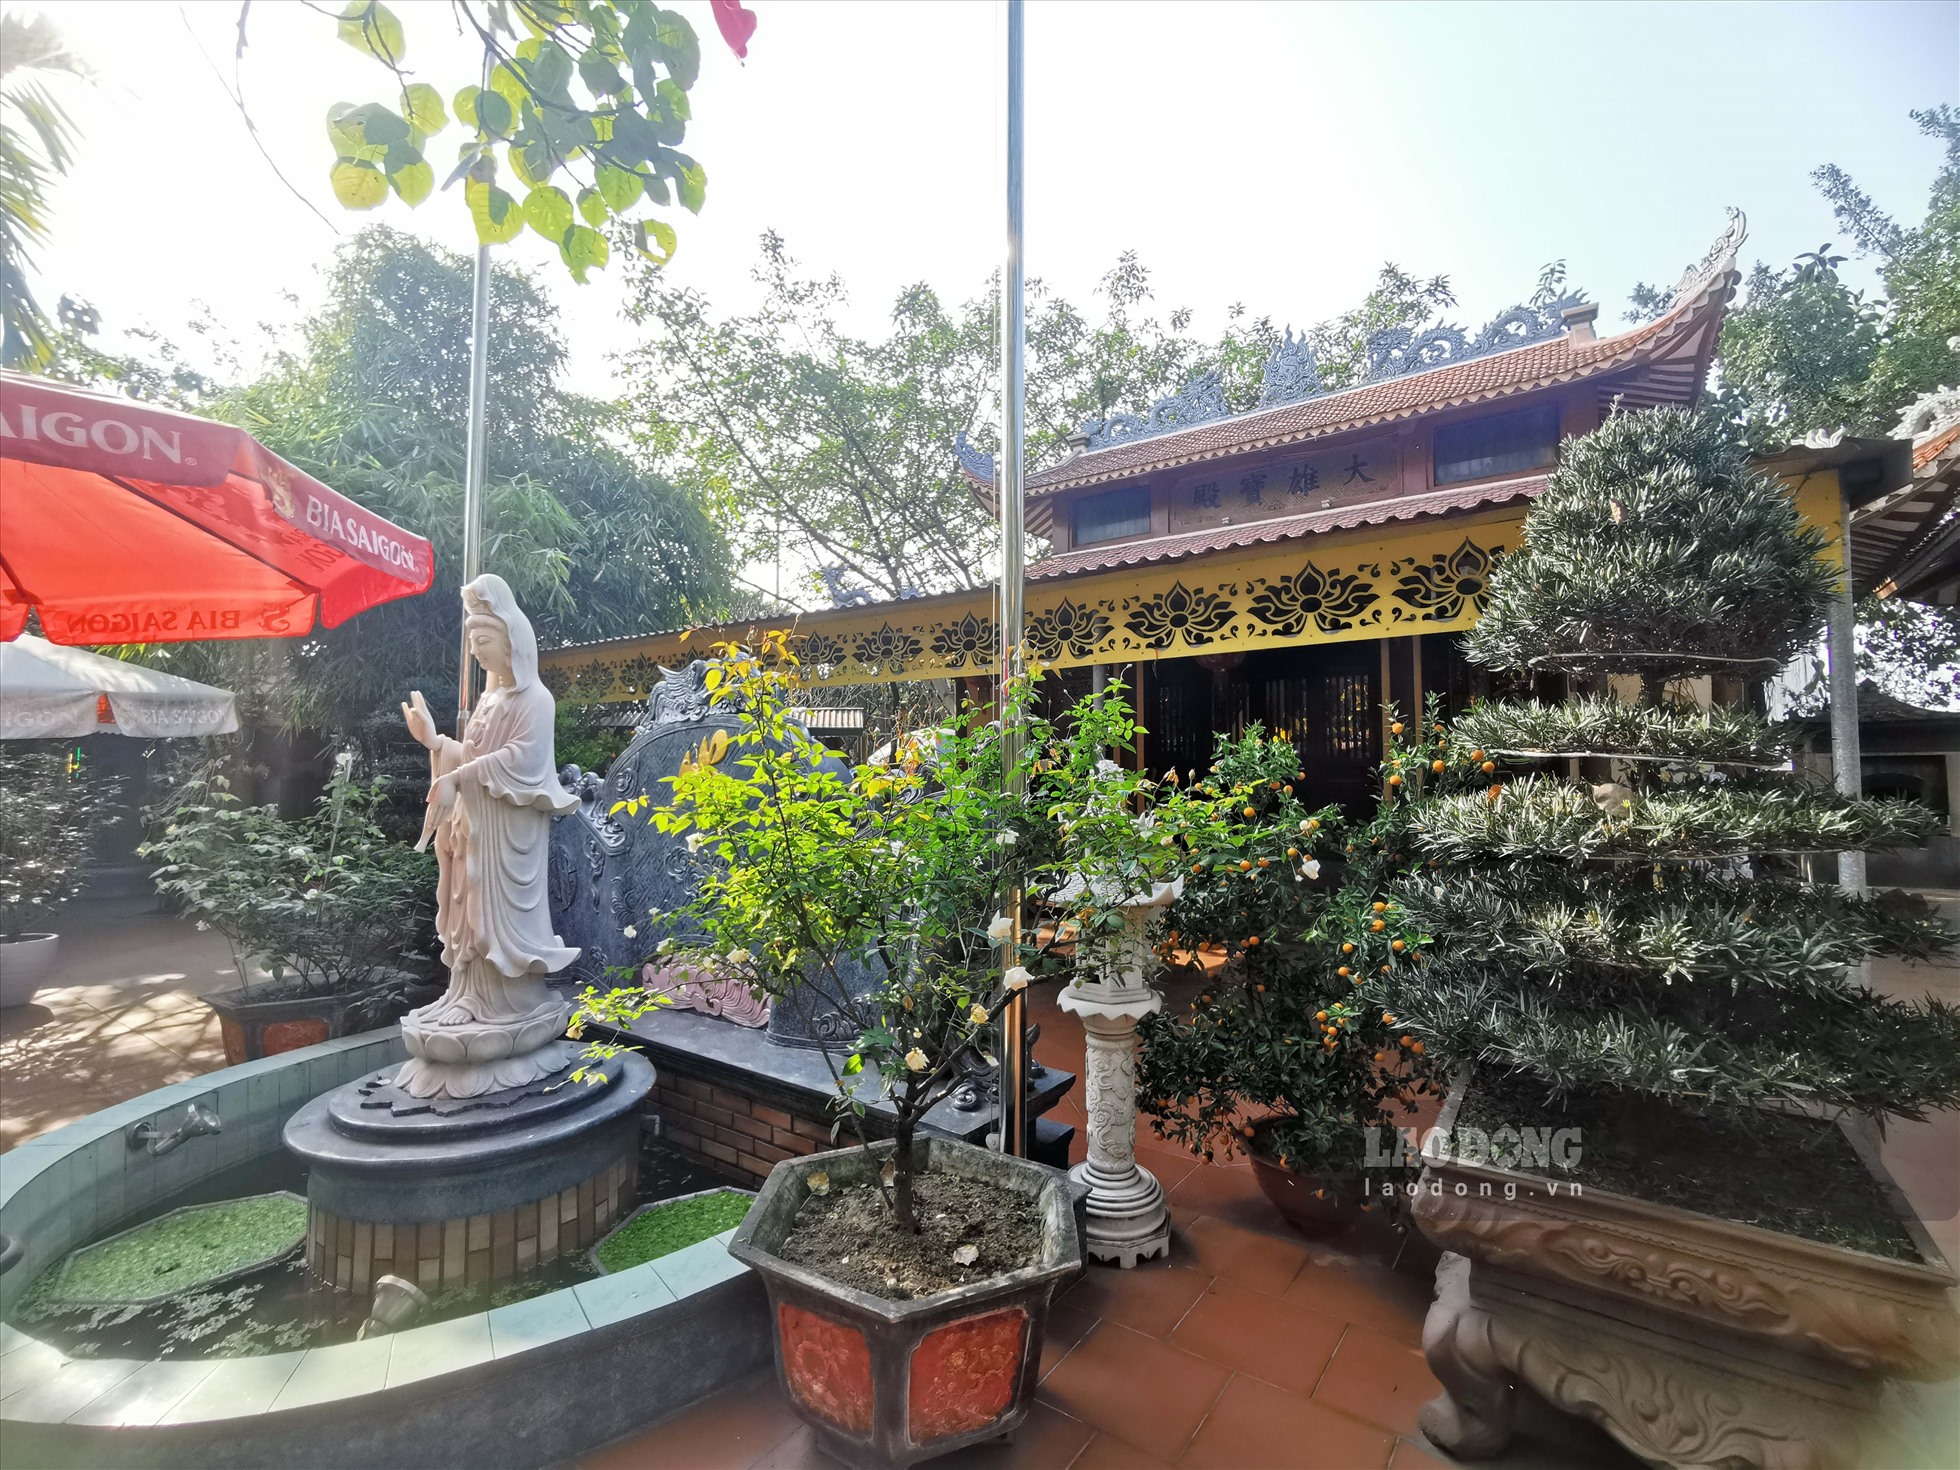 Đền Cái Lân nằm trên địa bàn phường Bãi Cháy, TP Hạ Long, tỉnh Quảng Ninh. Đây là một trong những ngôi đền cổ trên đất nước Việt Nam thờ Mẫu đệ Tam, được nhân dân thờ cúng nghiêm cẩn.